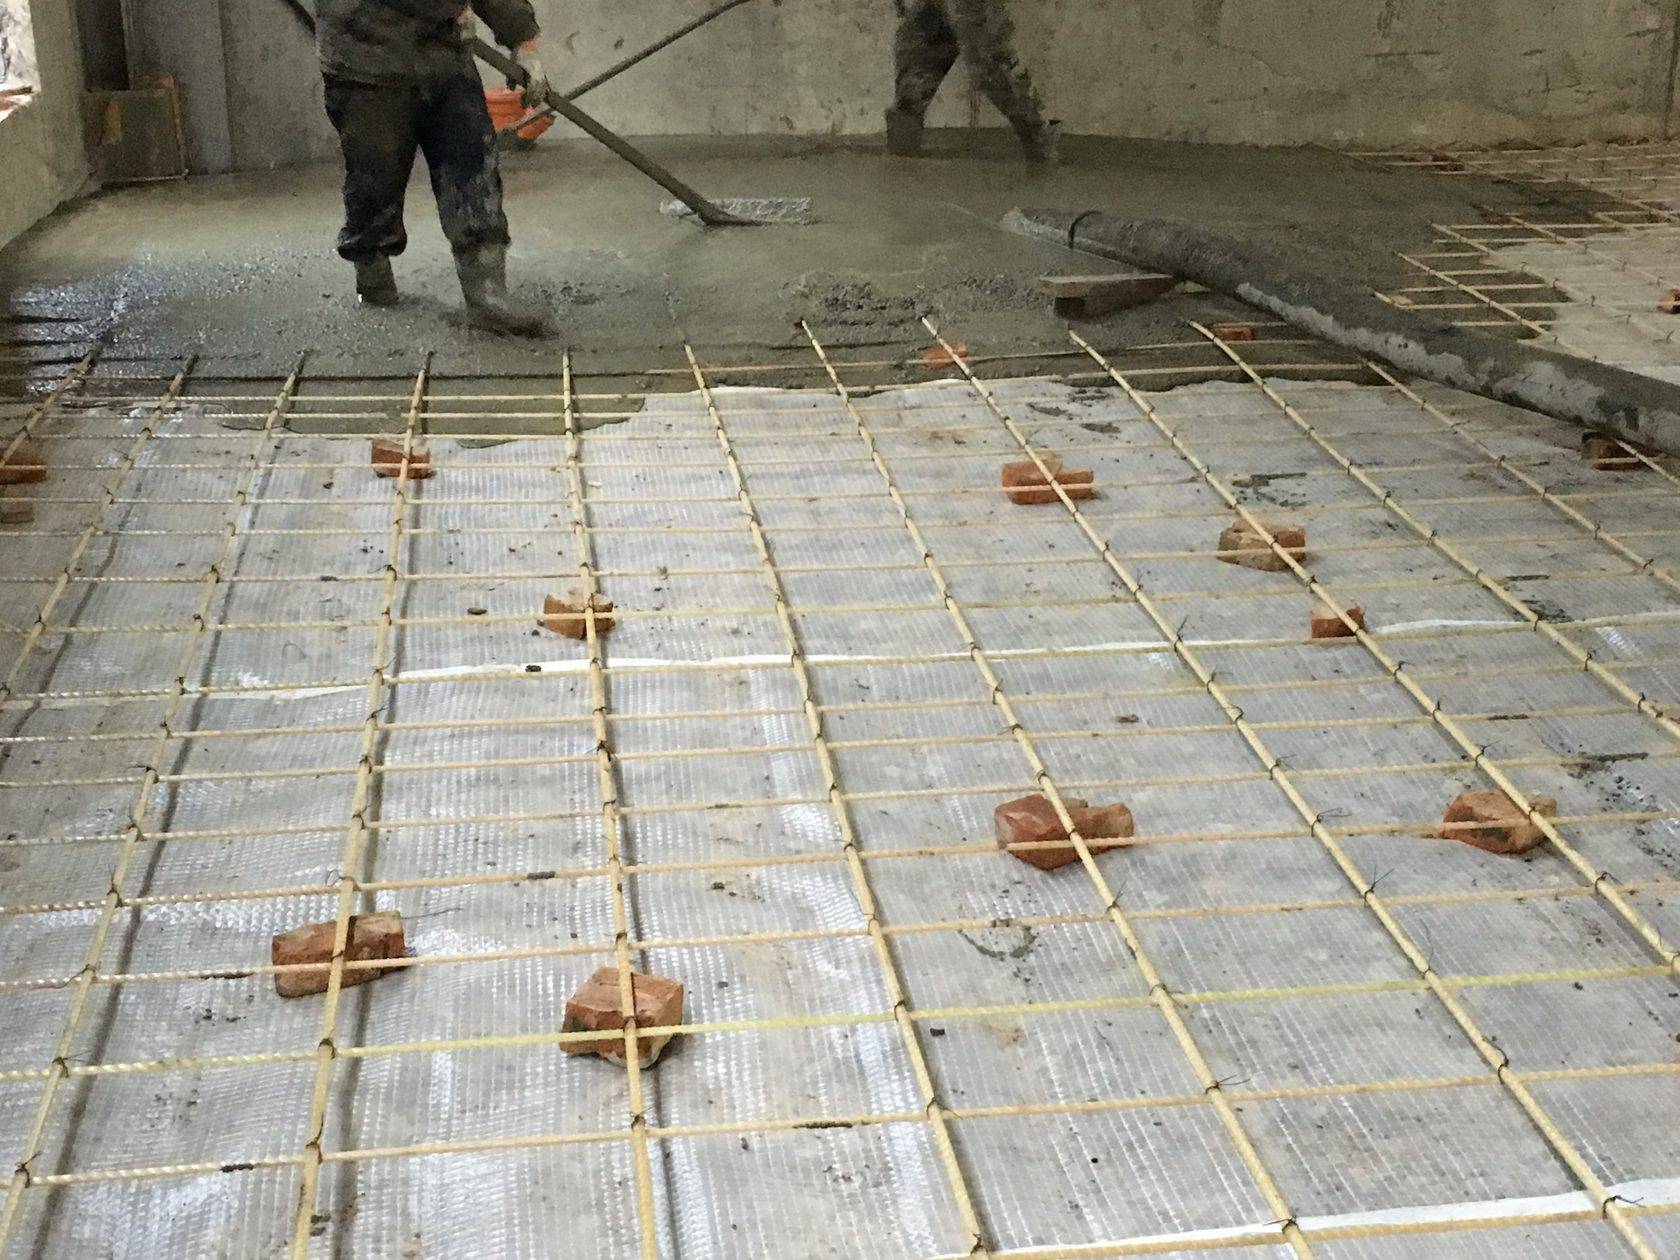 Как укладывать сетку для армирования стяжки пола из бетона: Советы - Обзор